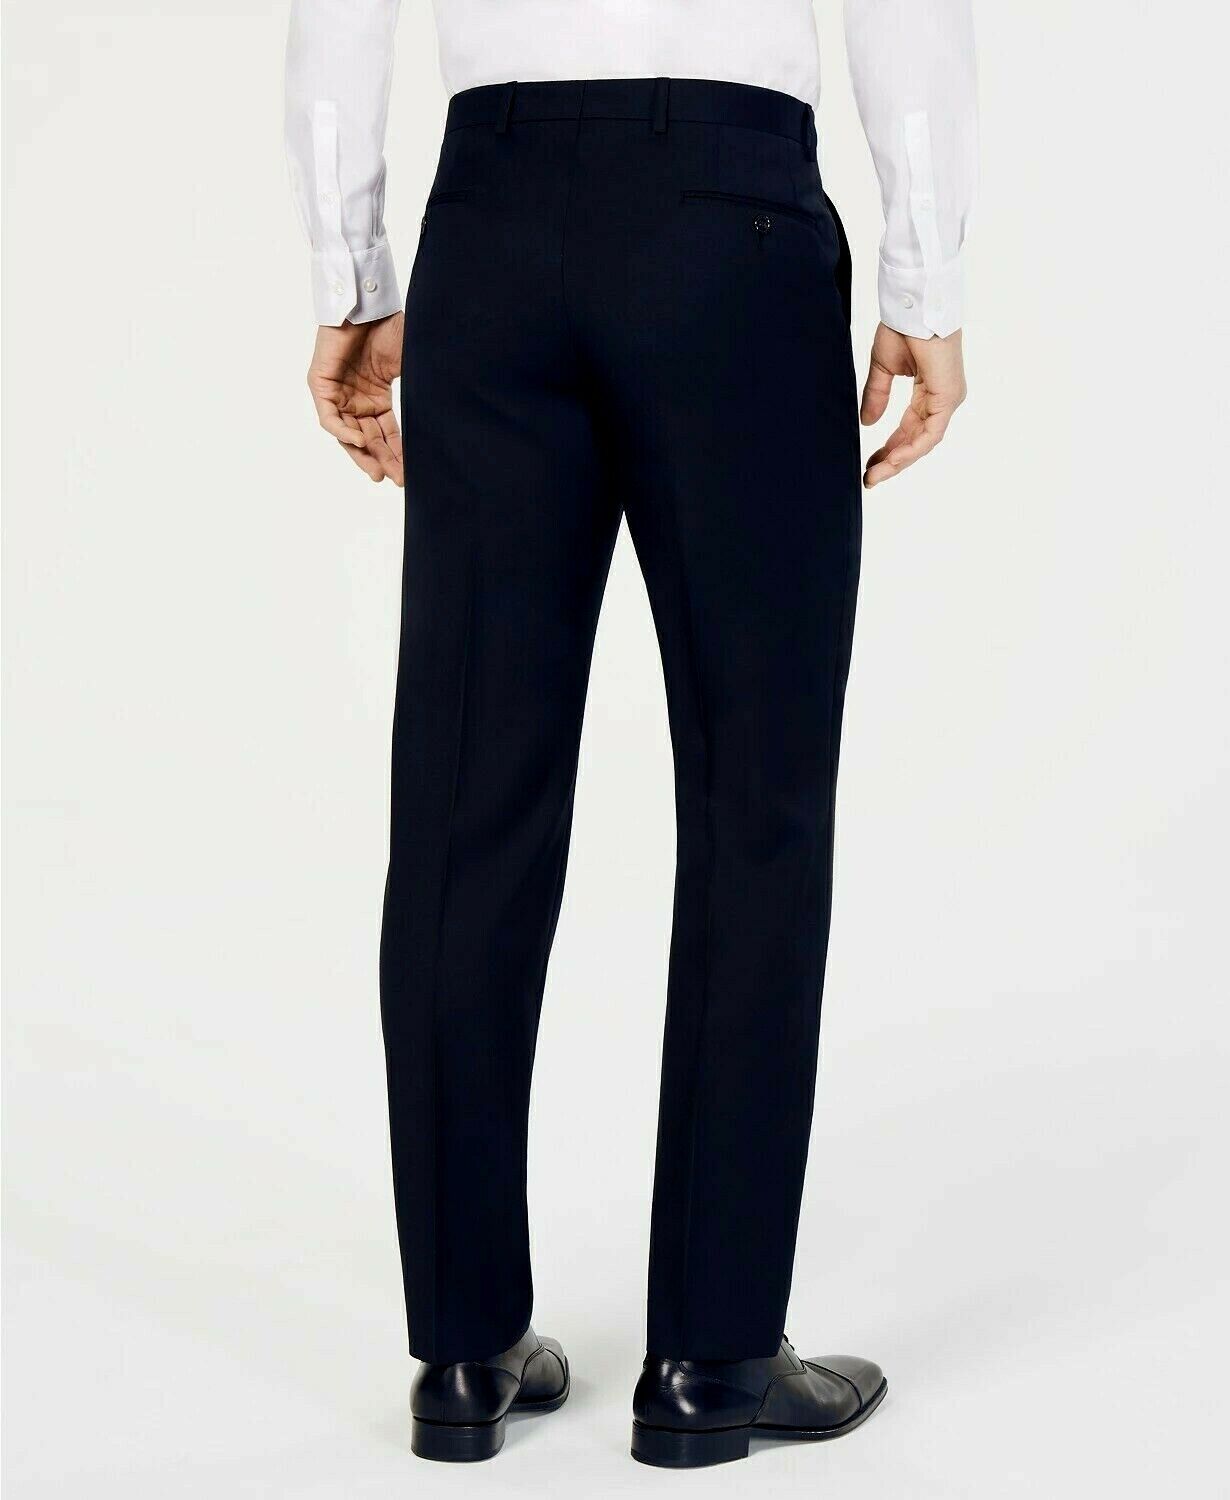 Lauren Ralph Lauren Pantalones de vestir para hombre $190 Tamaño 38WX30L # 19B 220 NUEVO